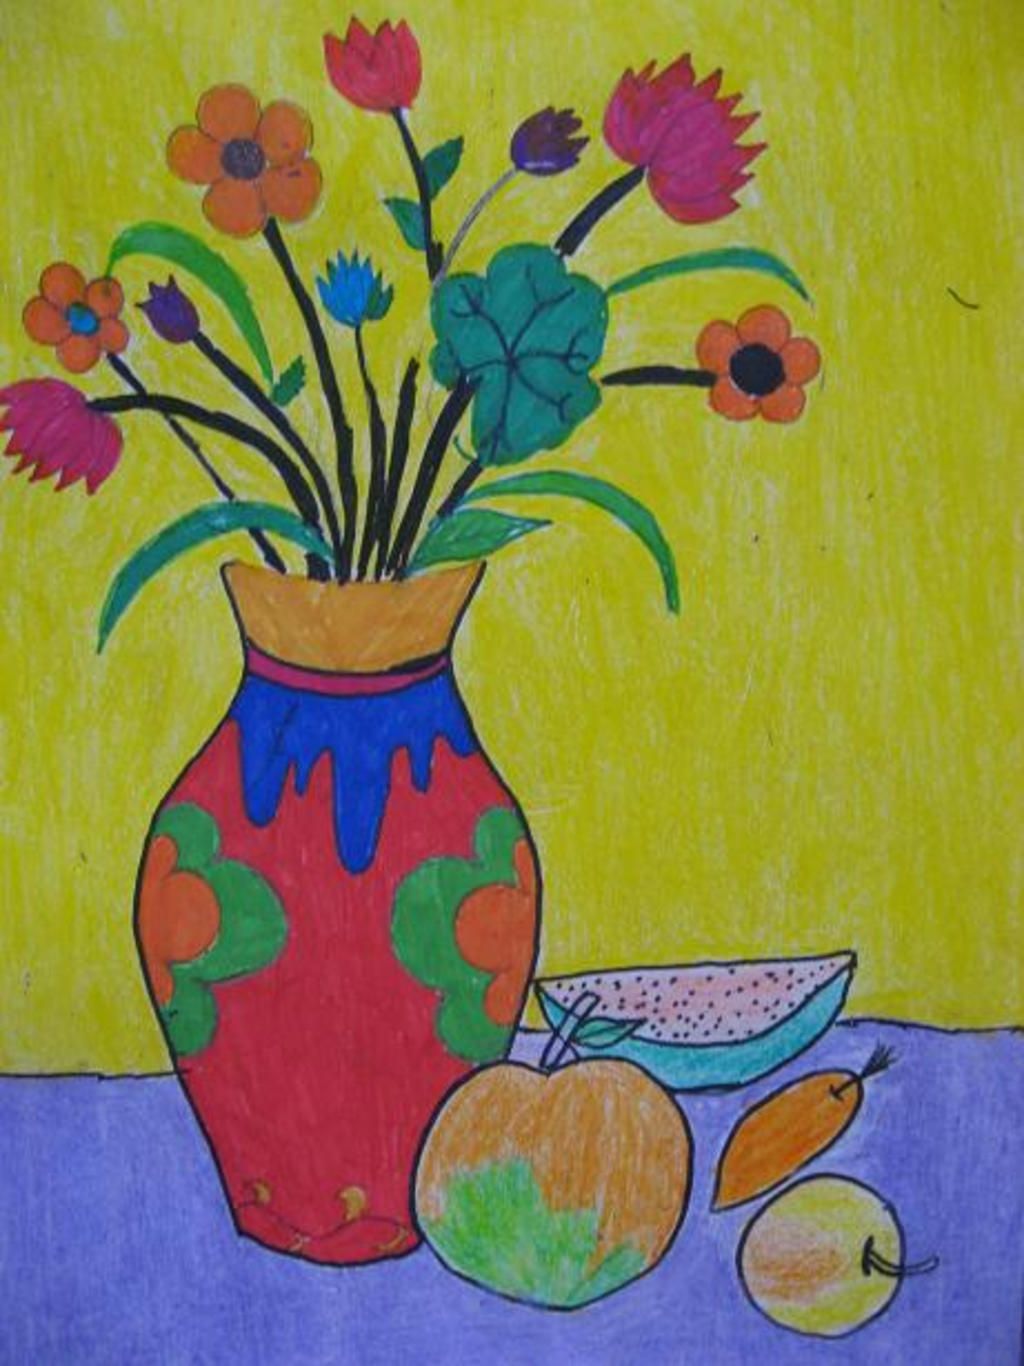 Vẽ bình hoa và quả: Vẽ bình hoa và quả là một trong những chủ đề yêu thích của các họa sĩ. Bức tranh được sáng tạo từ chủ đề này rất đa dạng và tinh tế. Nếu bạn yêu thích nghệ thuật và muốn thử sức với chủ đề này, hãy thưởng thức những bức tranh tuyệt đẹp và bắt đầu tạo ra sản phẩm của riêng mình.